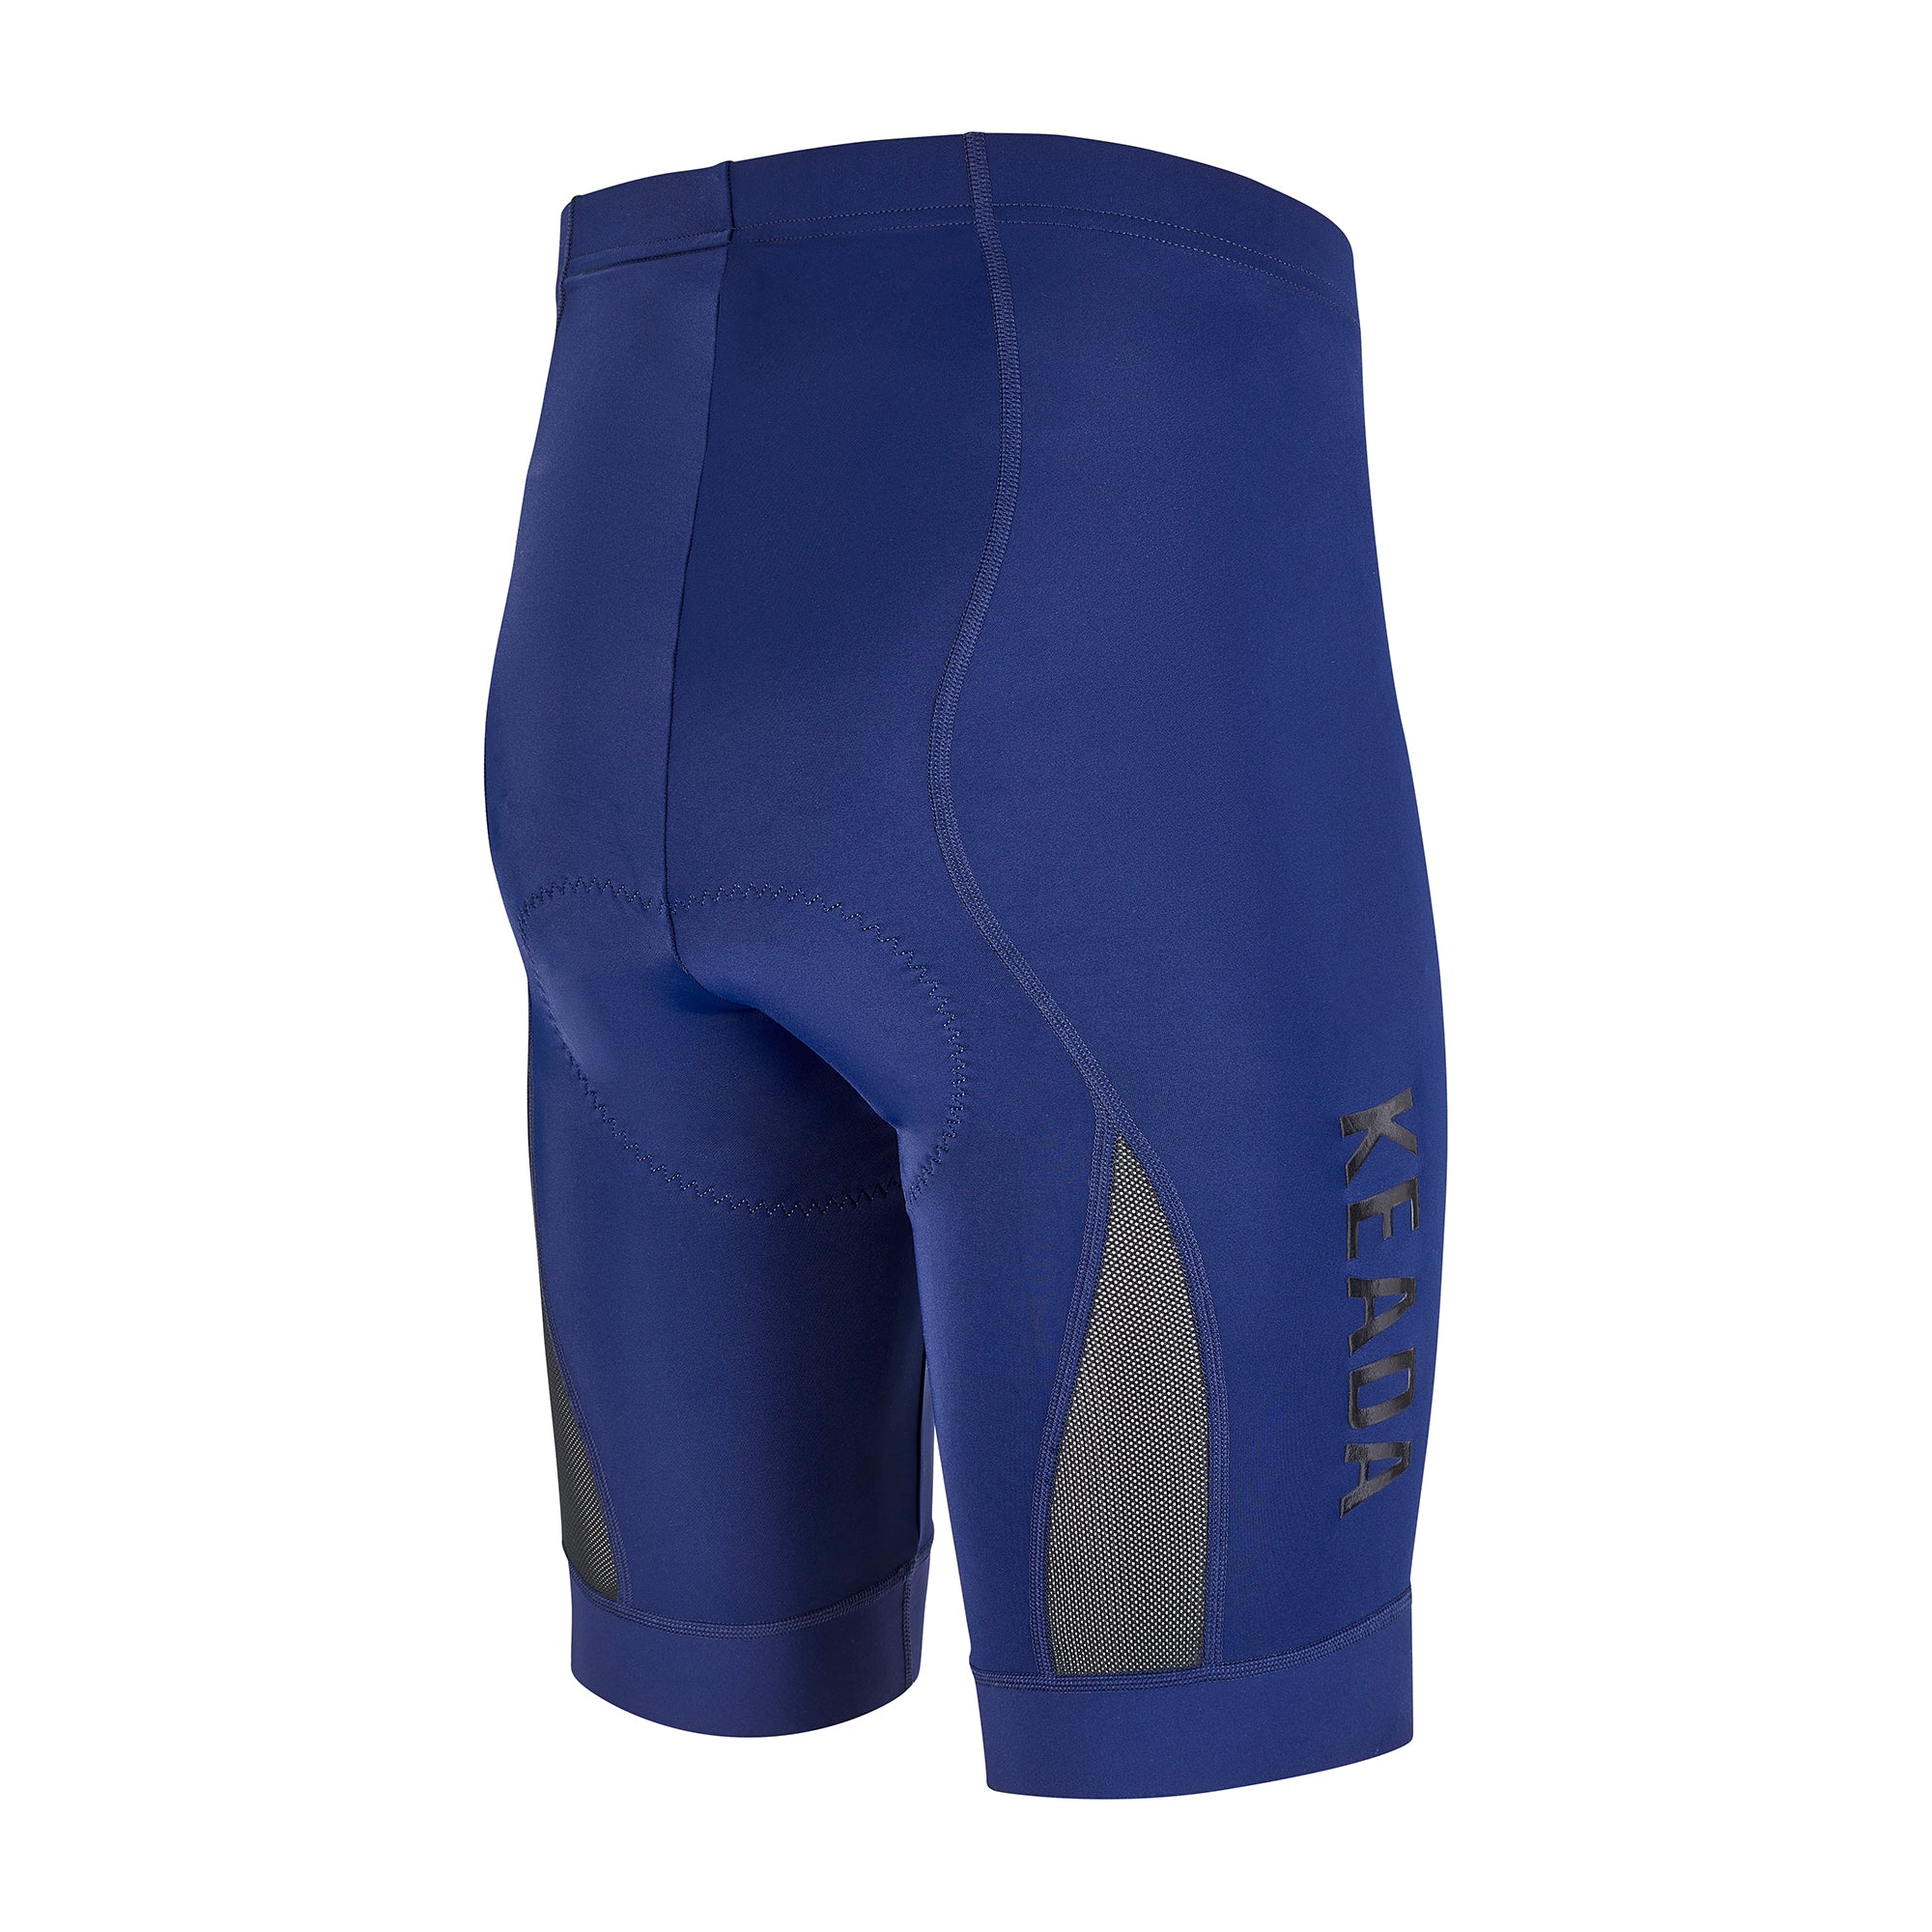 Pantalones cortos de ciclismo Essential para hombre - Azul marino